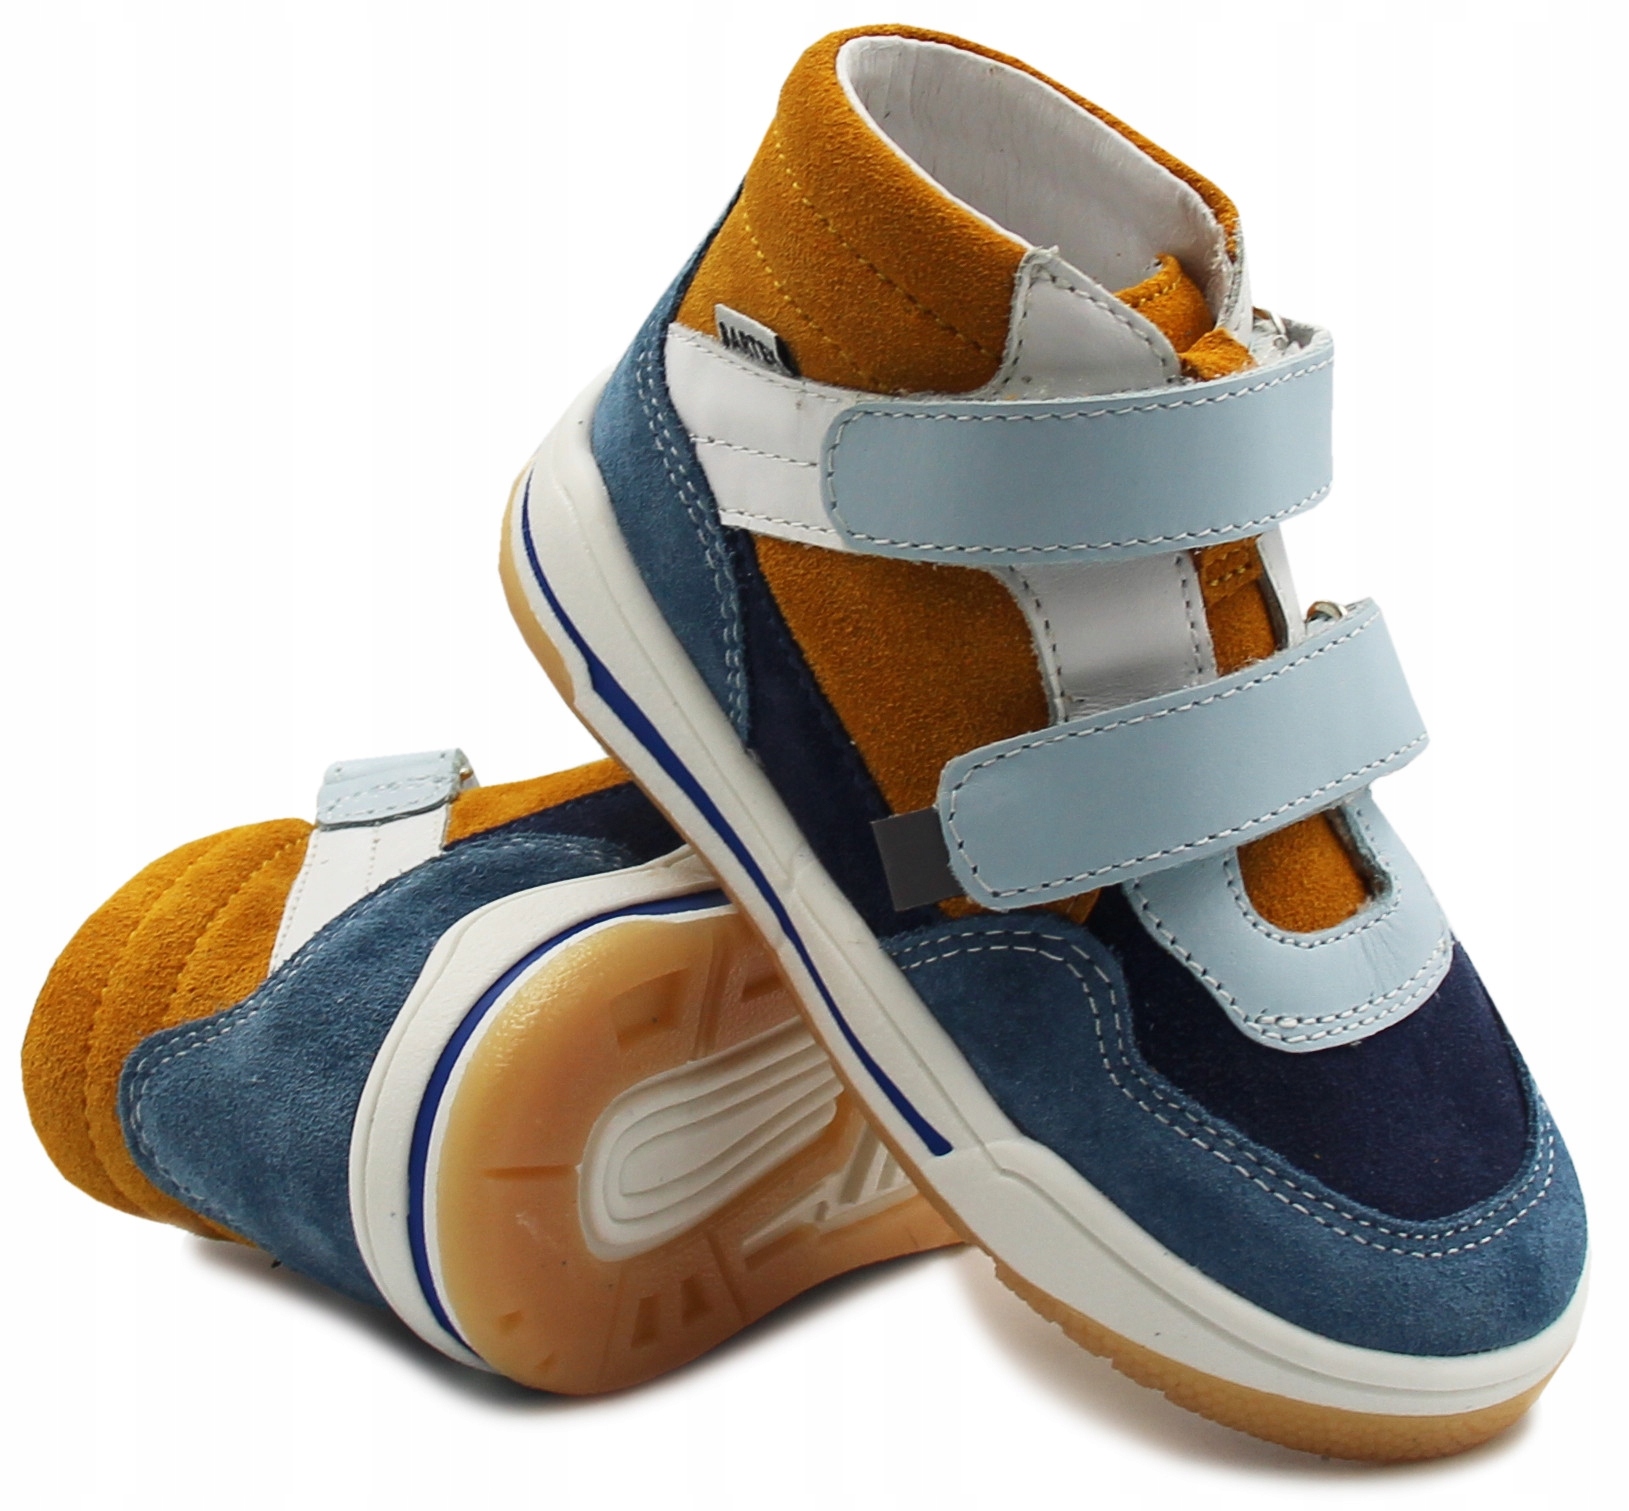 Wiosenne buty chłopięce rzepy 116150-02 Bartek 23 13533597590 - Allegro.pl